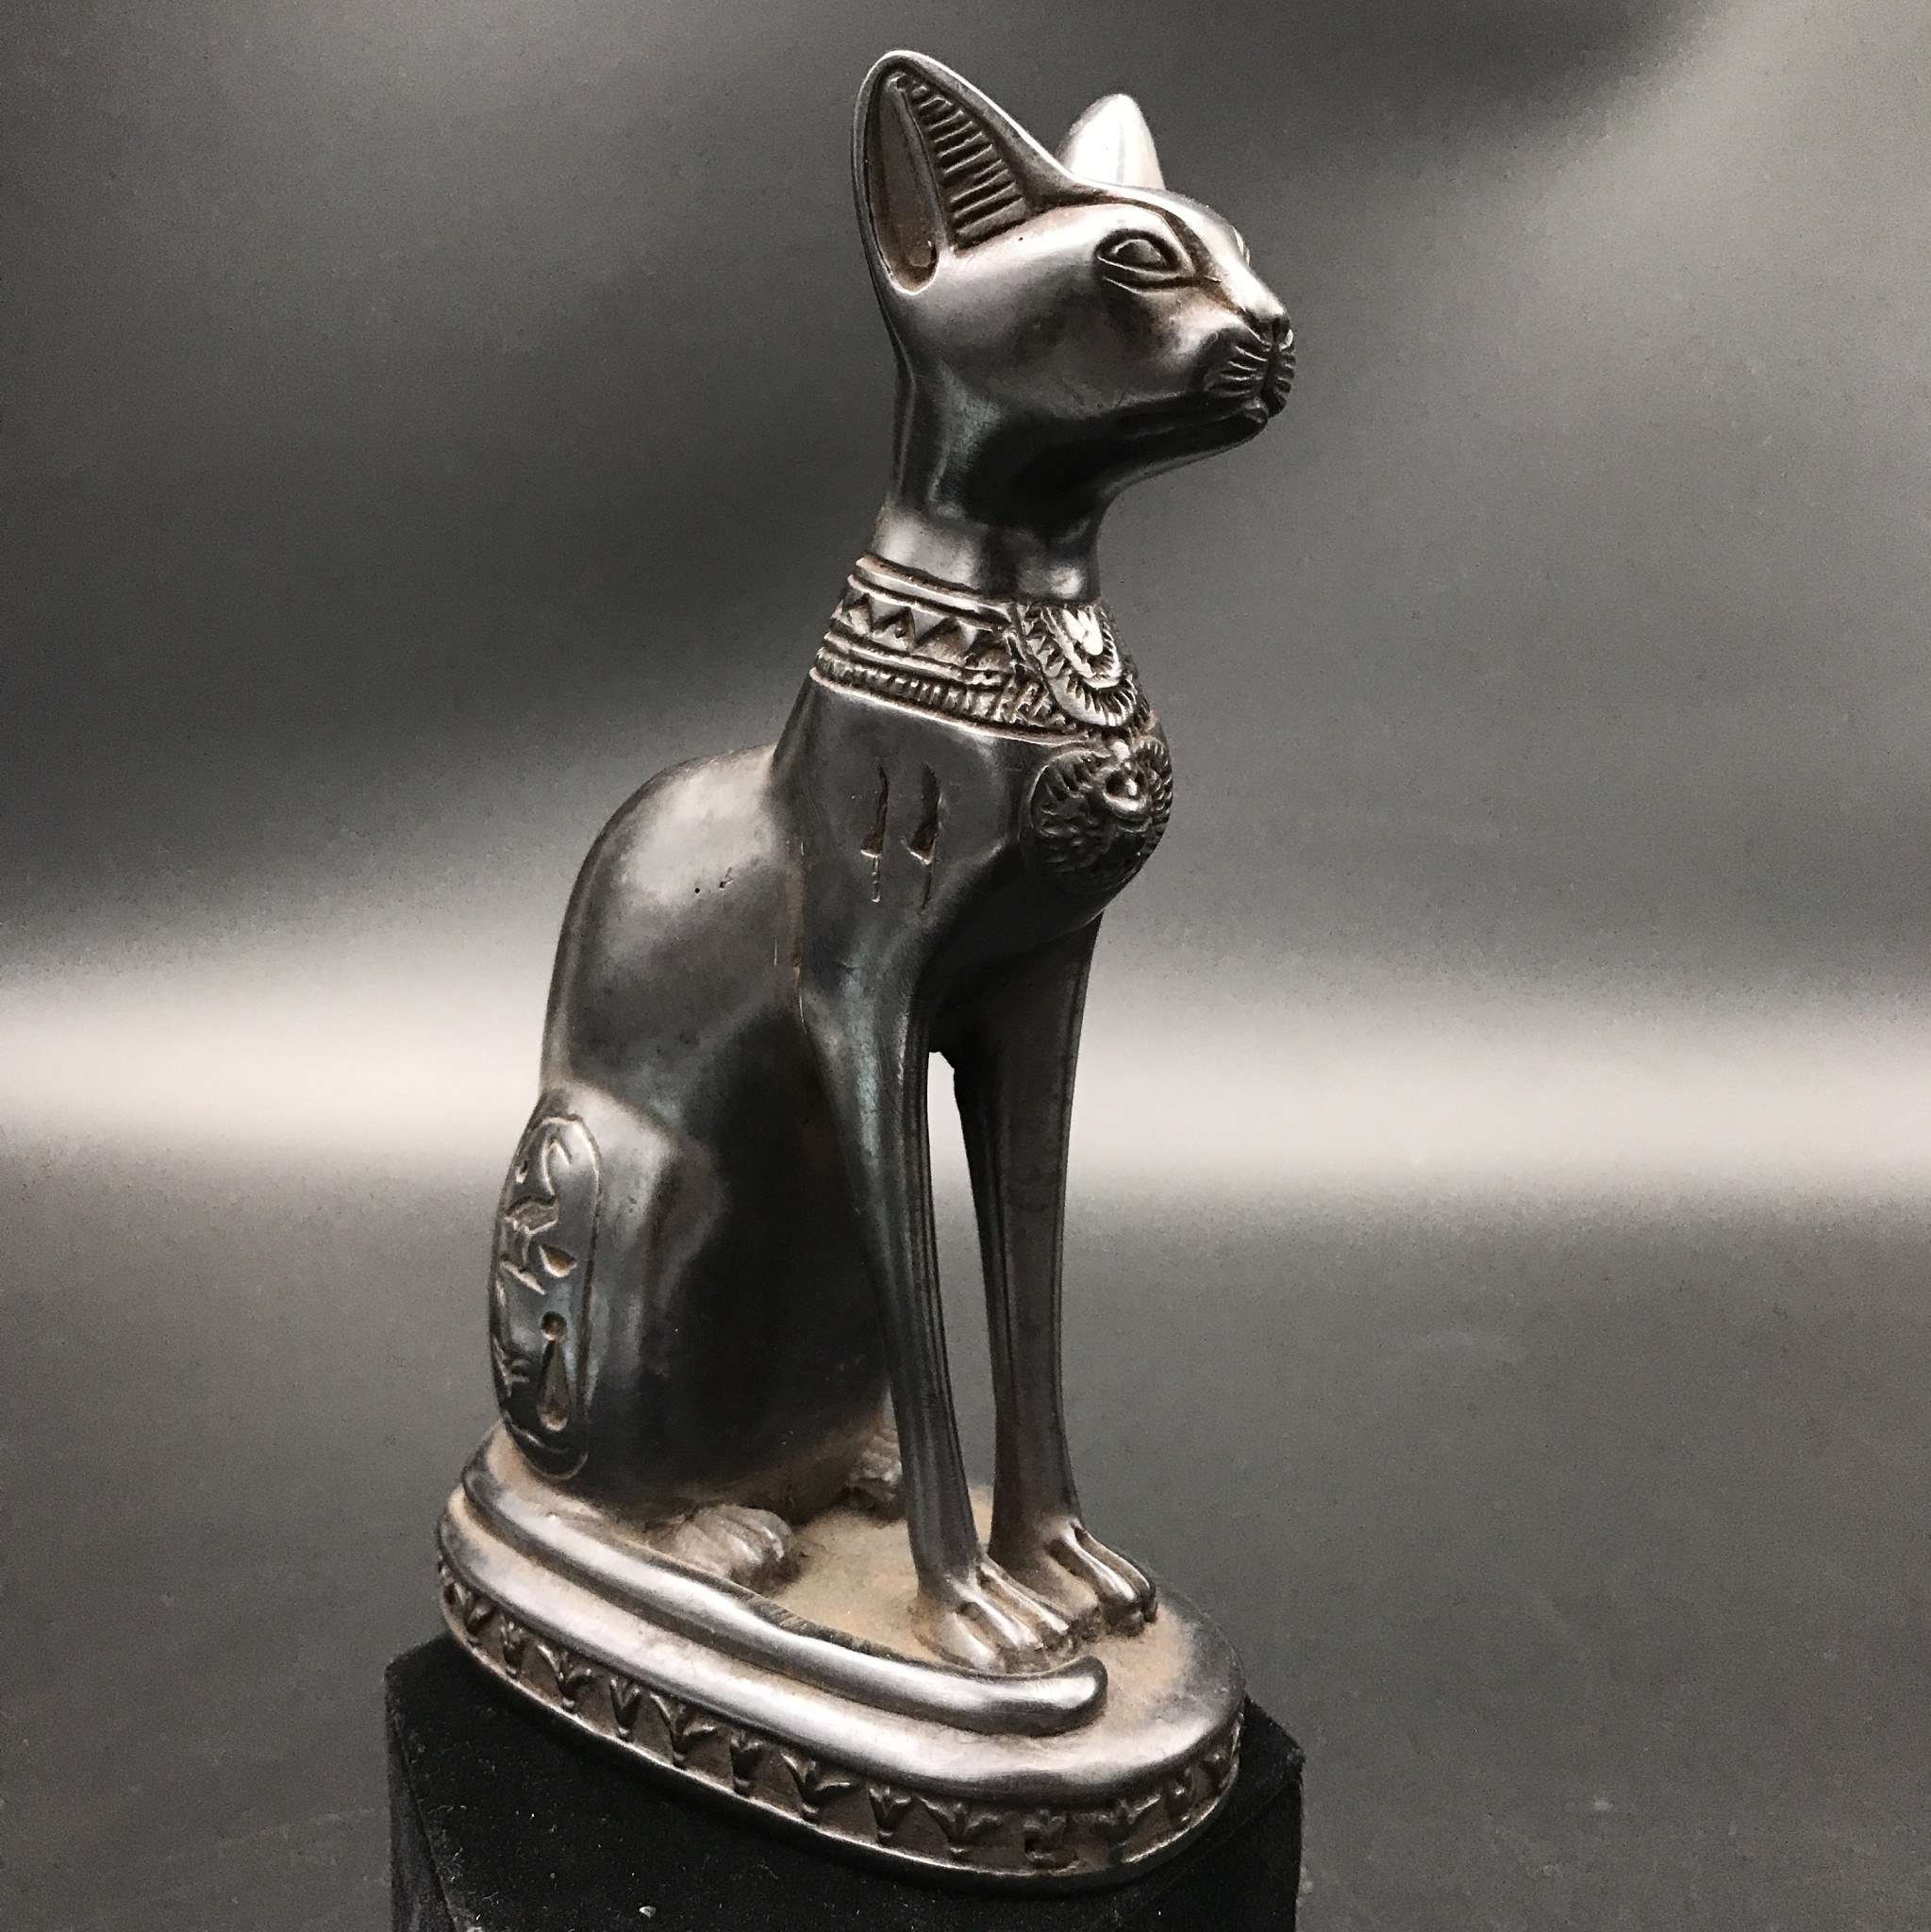 https://cdn.shoplightspeed.com/shops/643444/files/38042160/egyptian-cat-goddess-bastet-statue-75-inches-tall.jpg